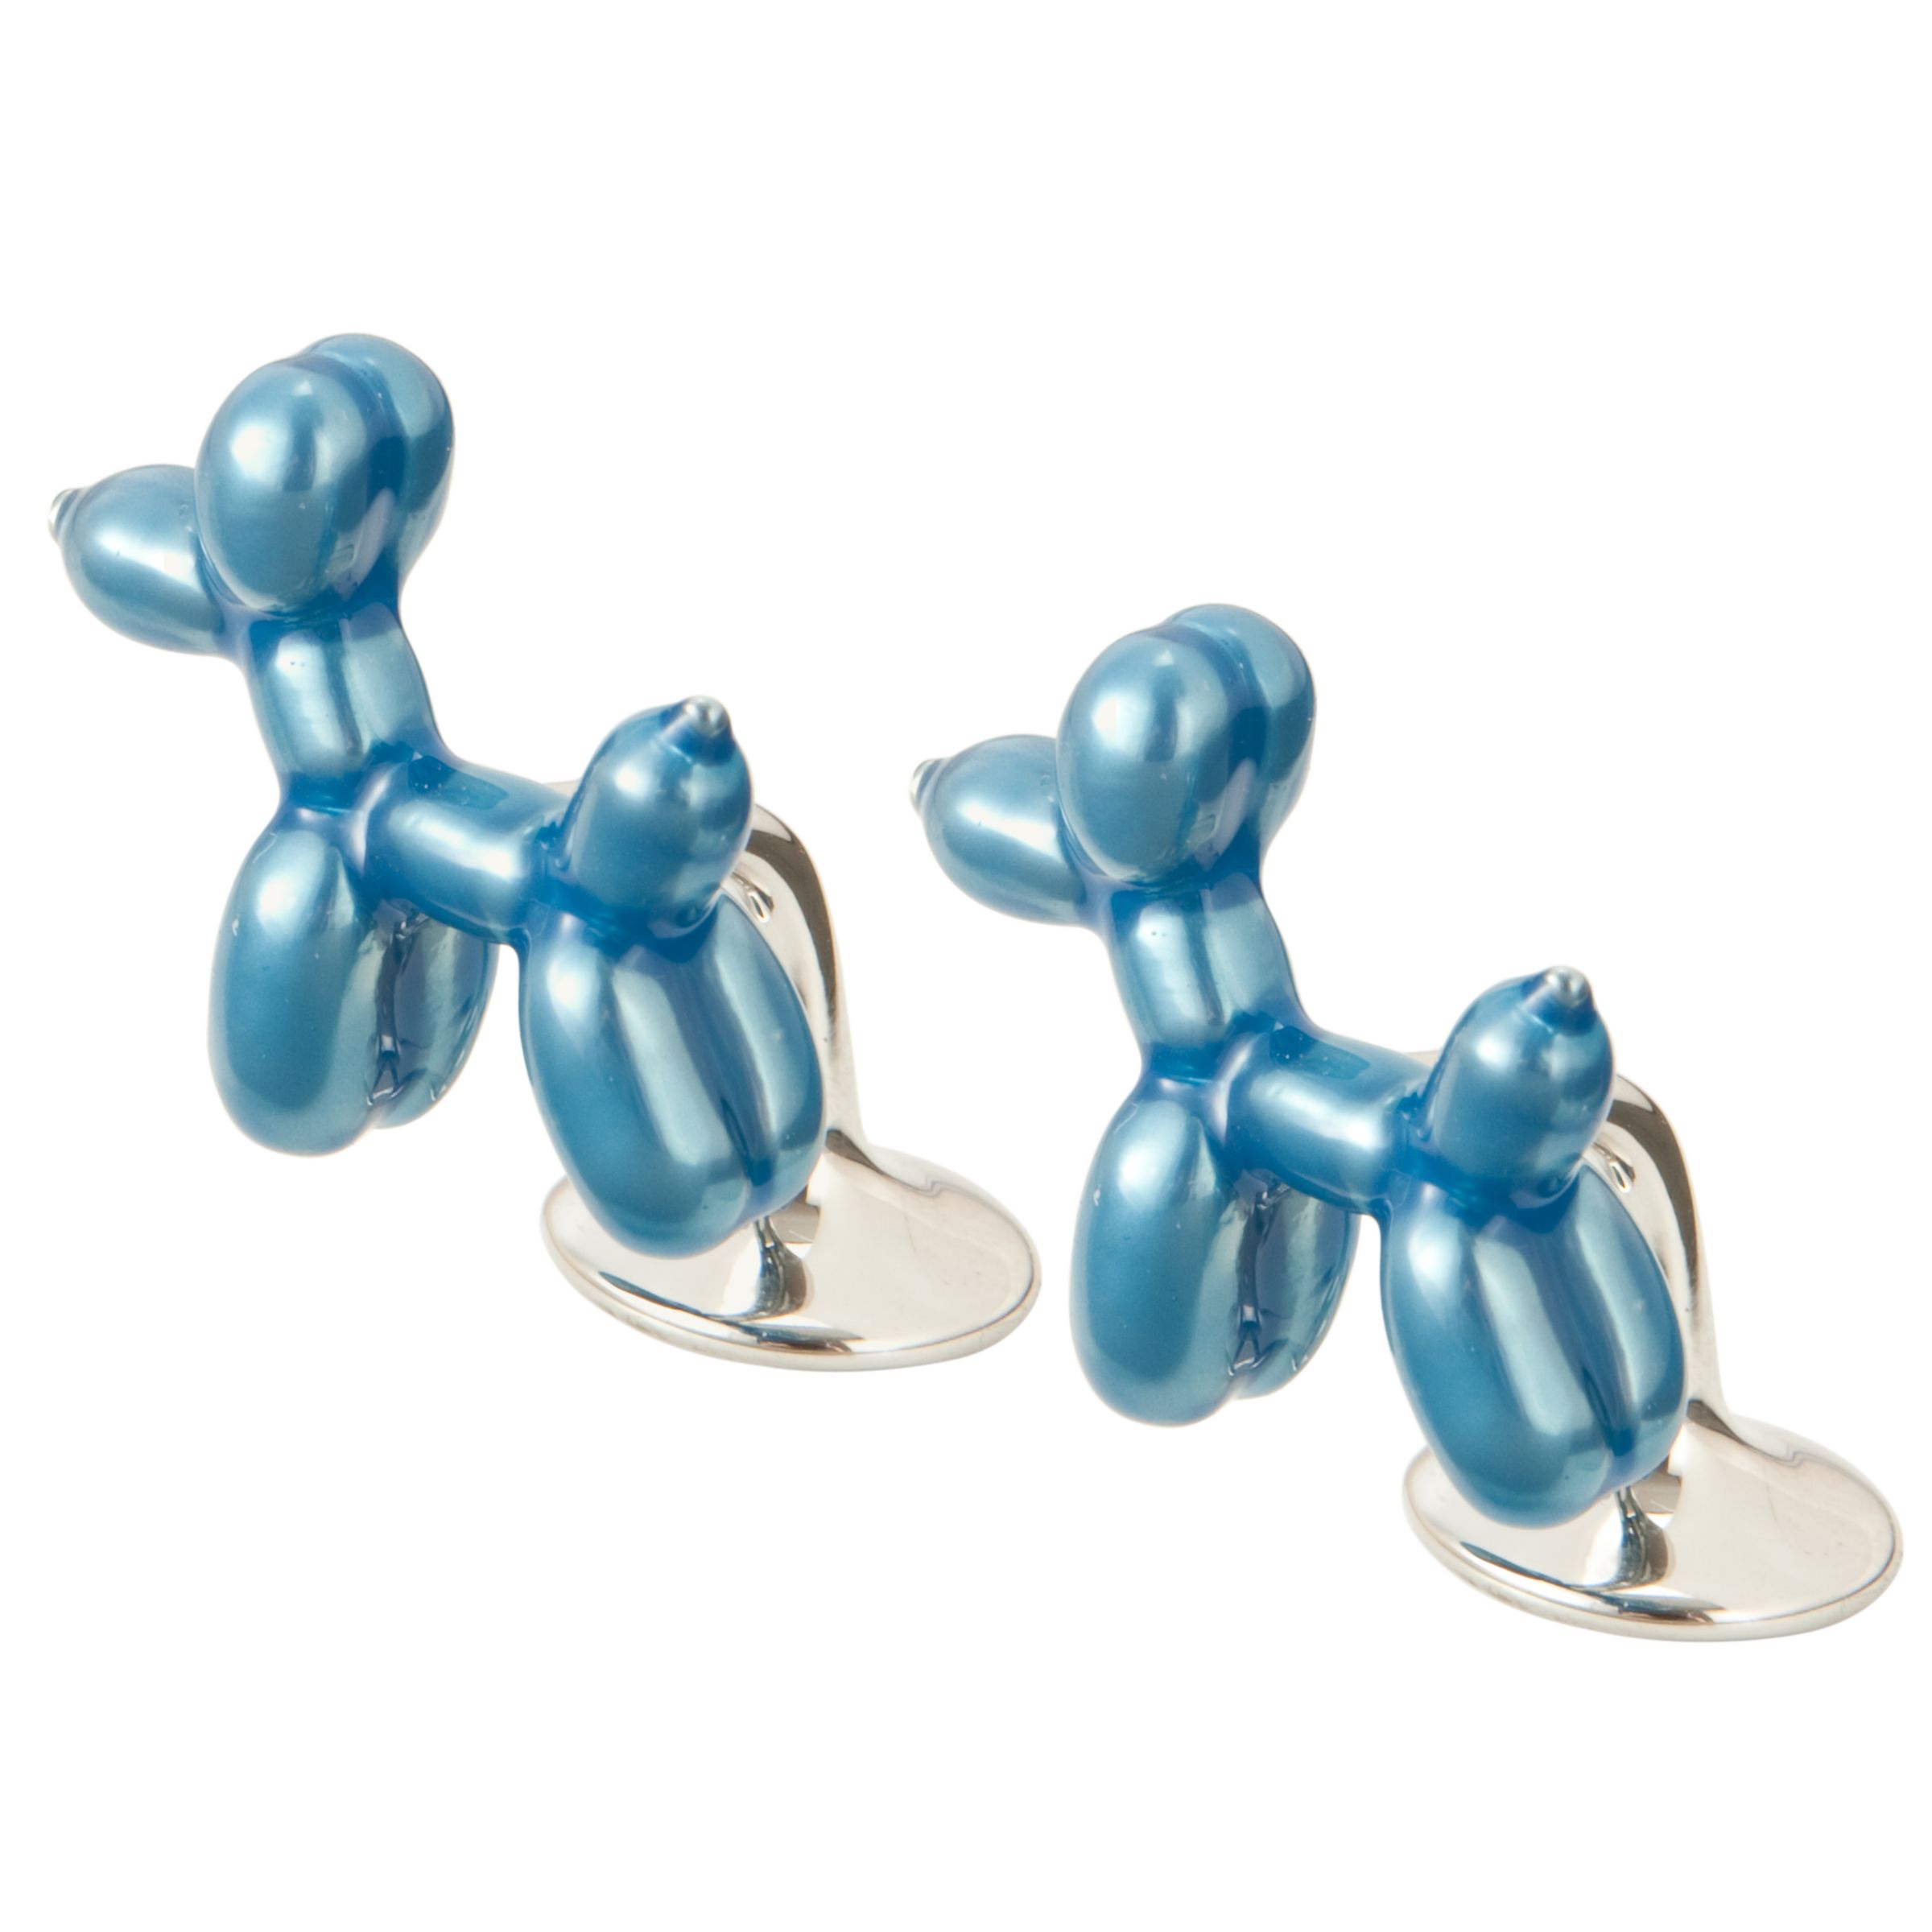 Ted Baker Balloon Dog Cufflinks, Blue